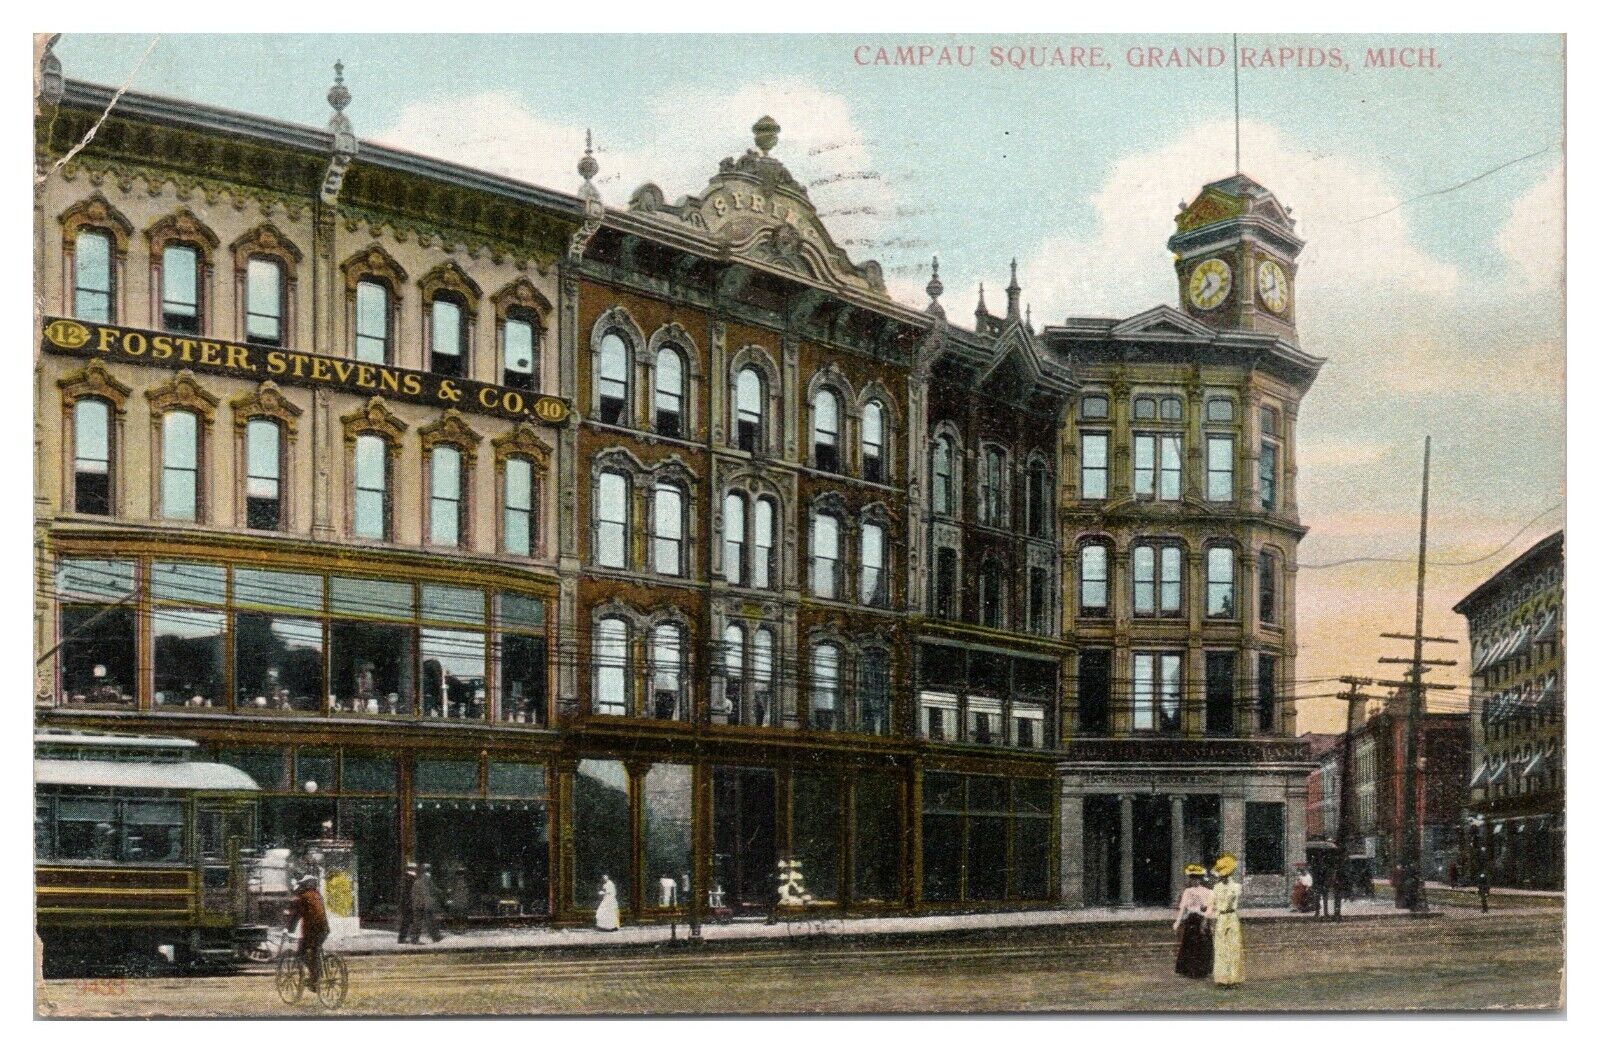 Campau Square Grand Rapids Michigan MI Postcard c1911 Foster Stevens Co. Street